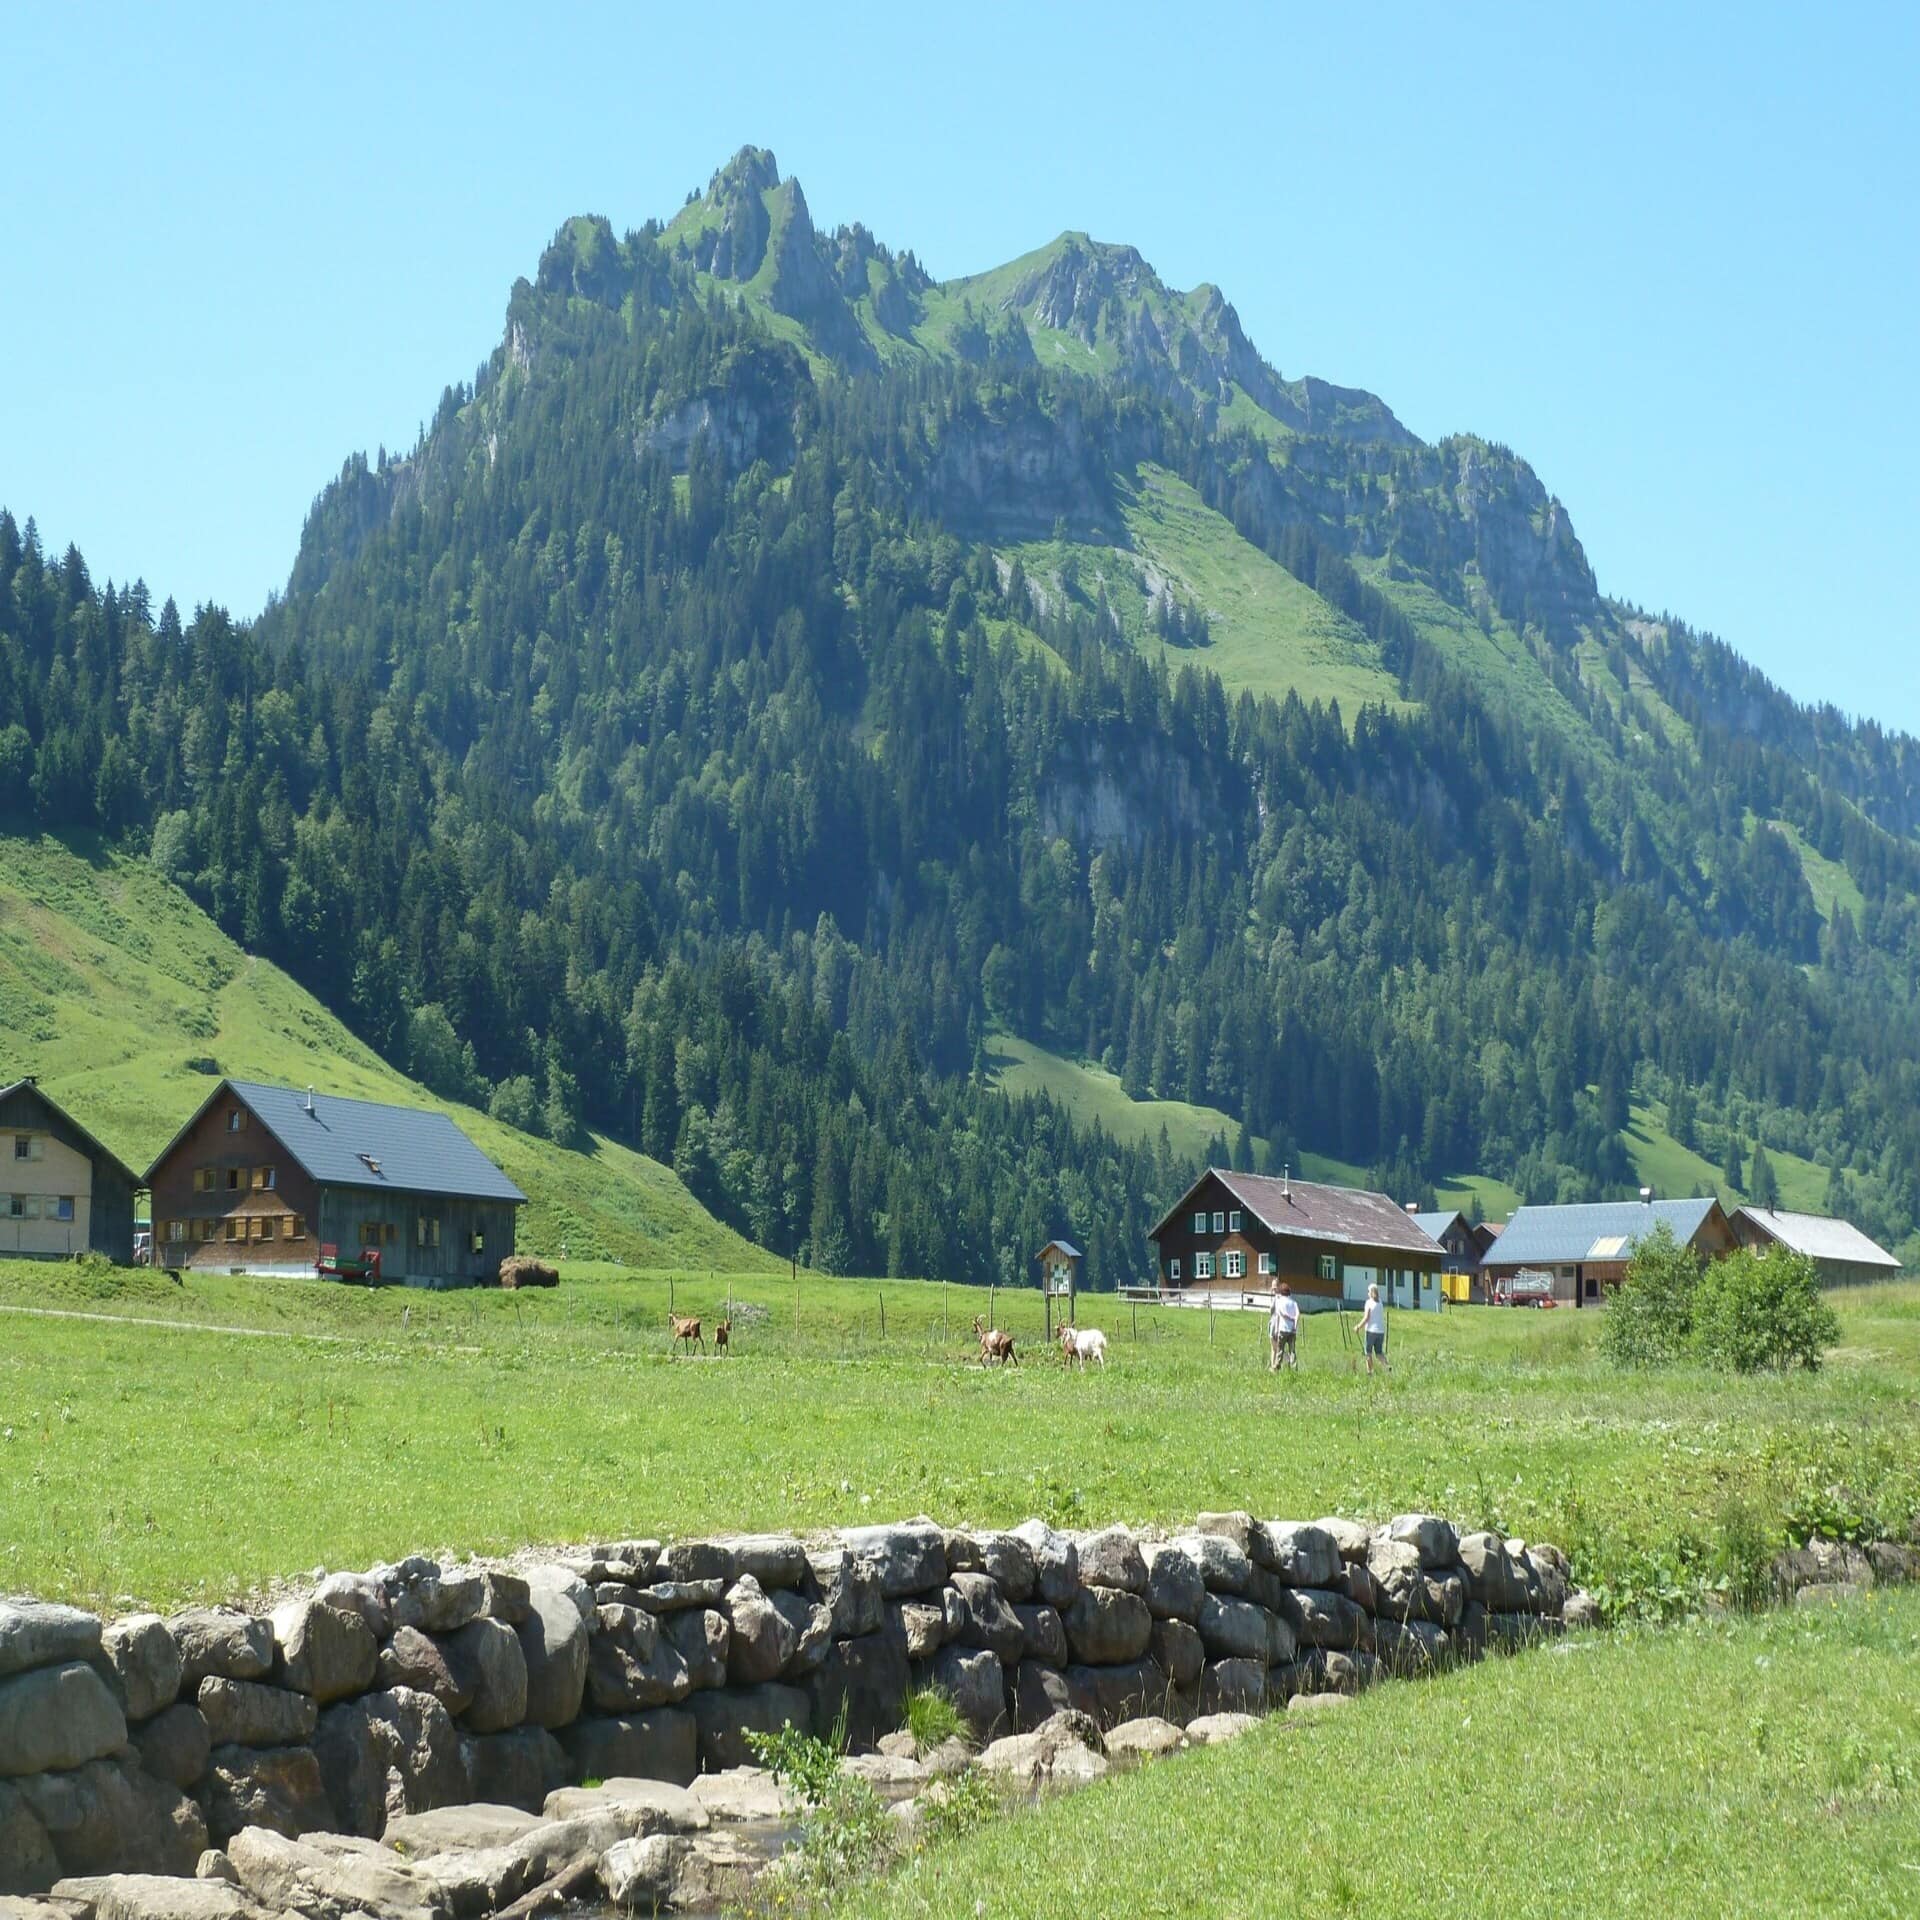 Bauerndorf inmitten grüner Wiesen und Berge. Ziegen und Personen auf einem Feldweg.